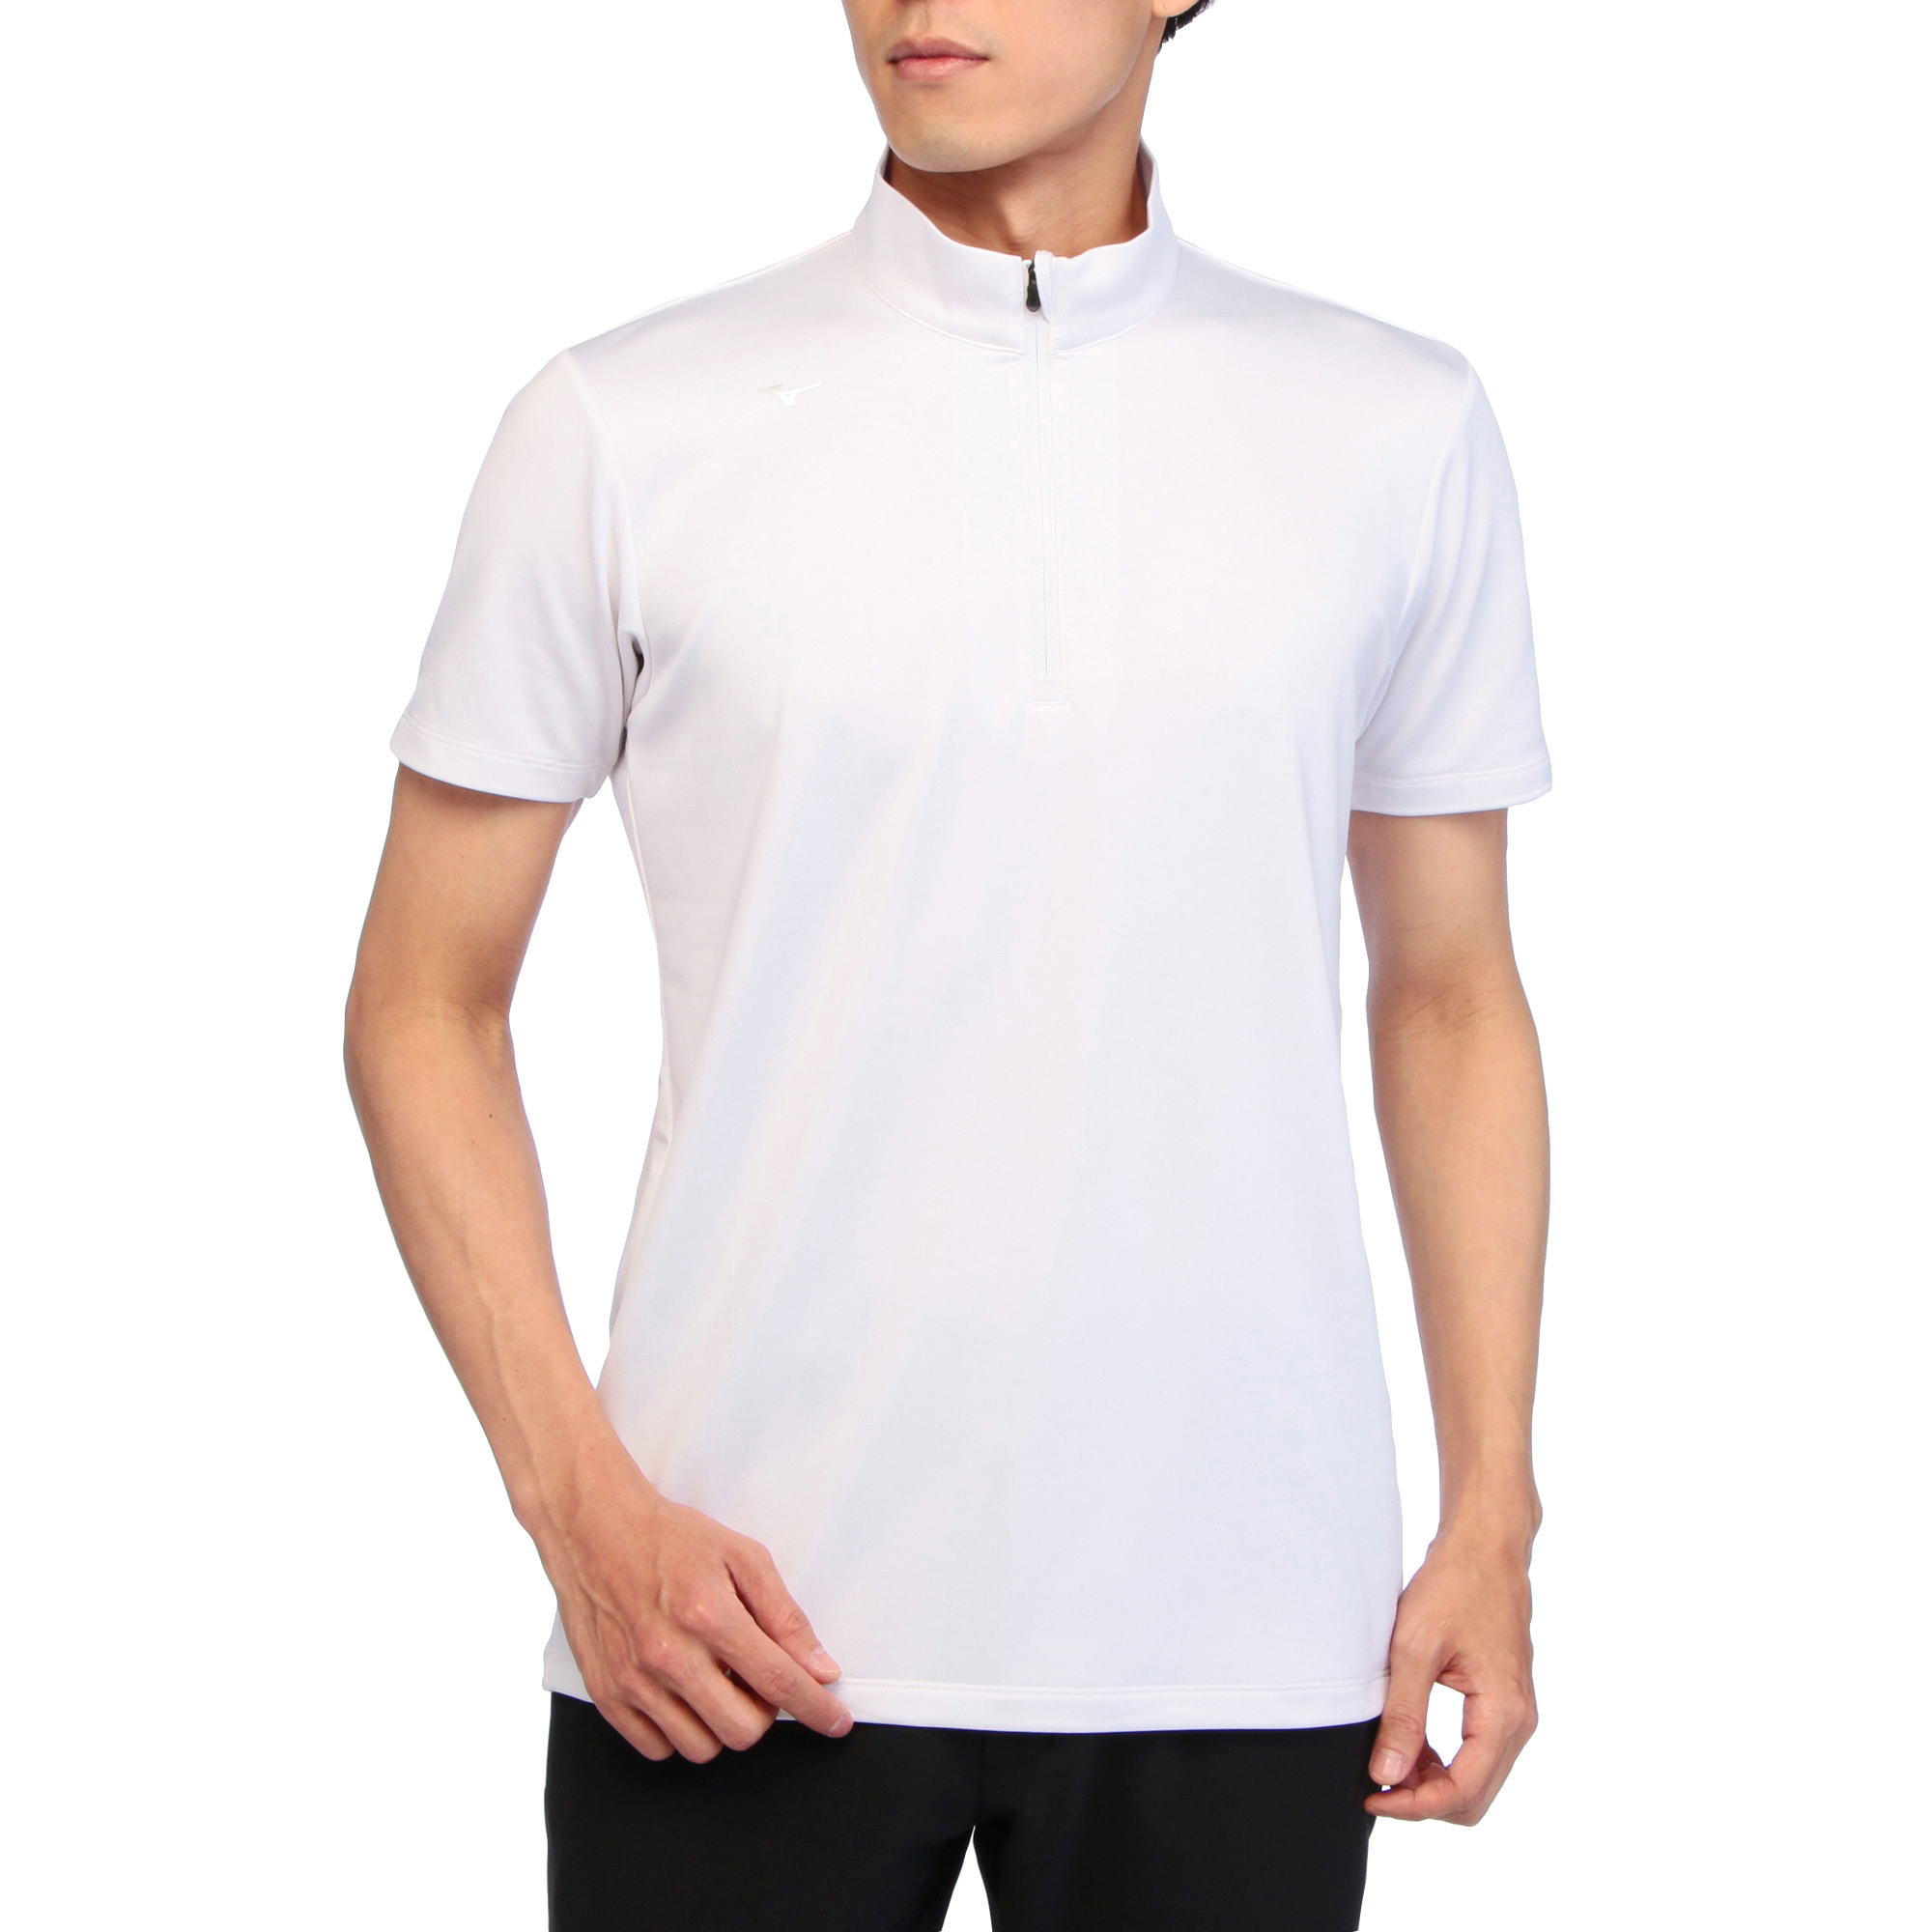 裏微起毛半袖ジップアップシャツ[メンズ]|E2MA2501|半袖シャツ|ゴルフ